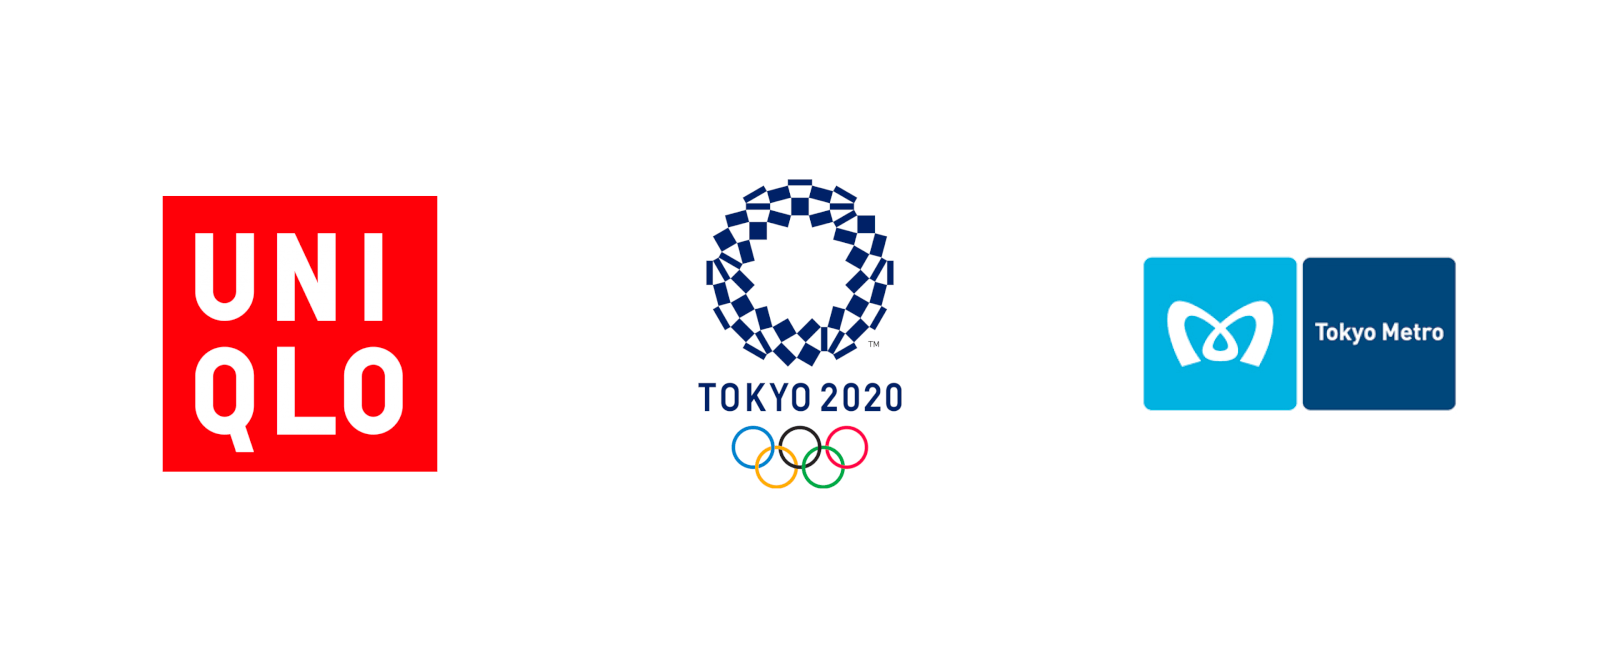 ユニクロ、東京オリンピック2020、東京メトロのロゴ